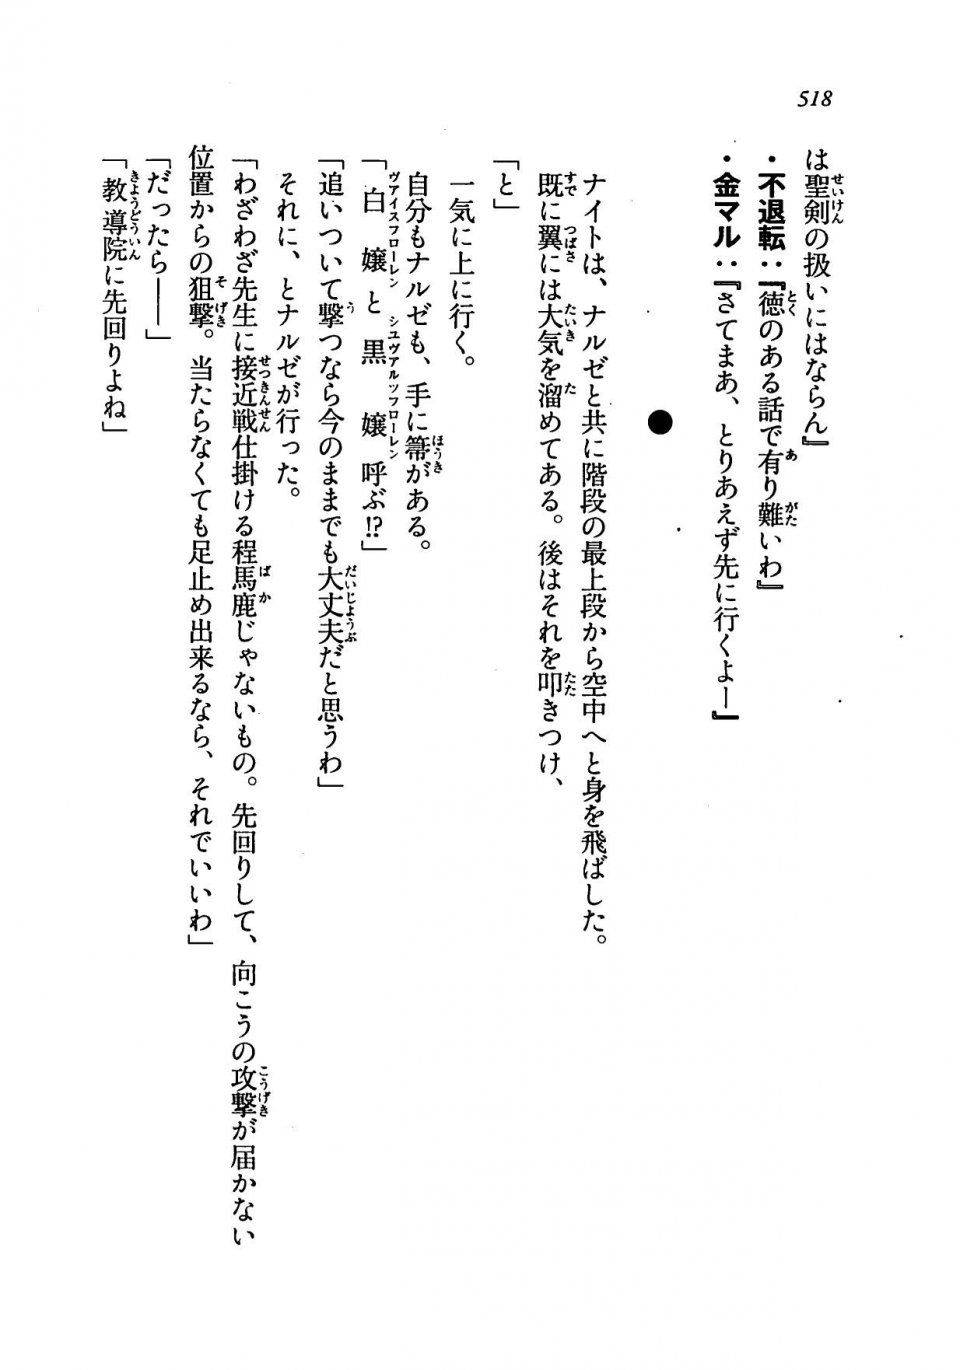 Kyoukai Senjou no Horizon LN Vol 19(8A) - Photo #518